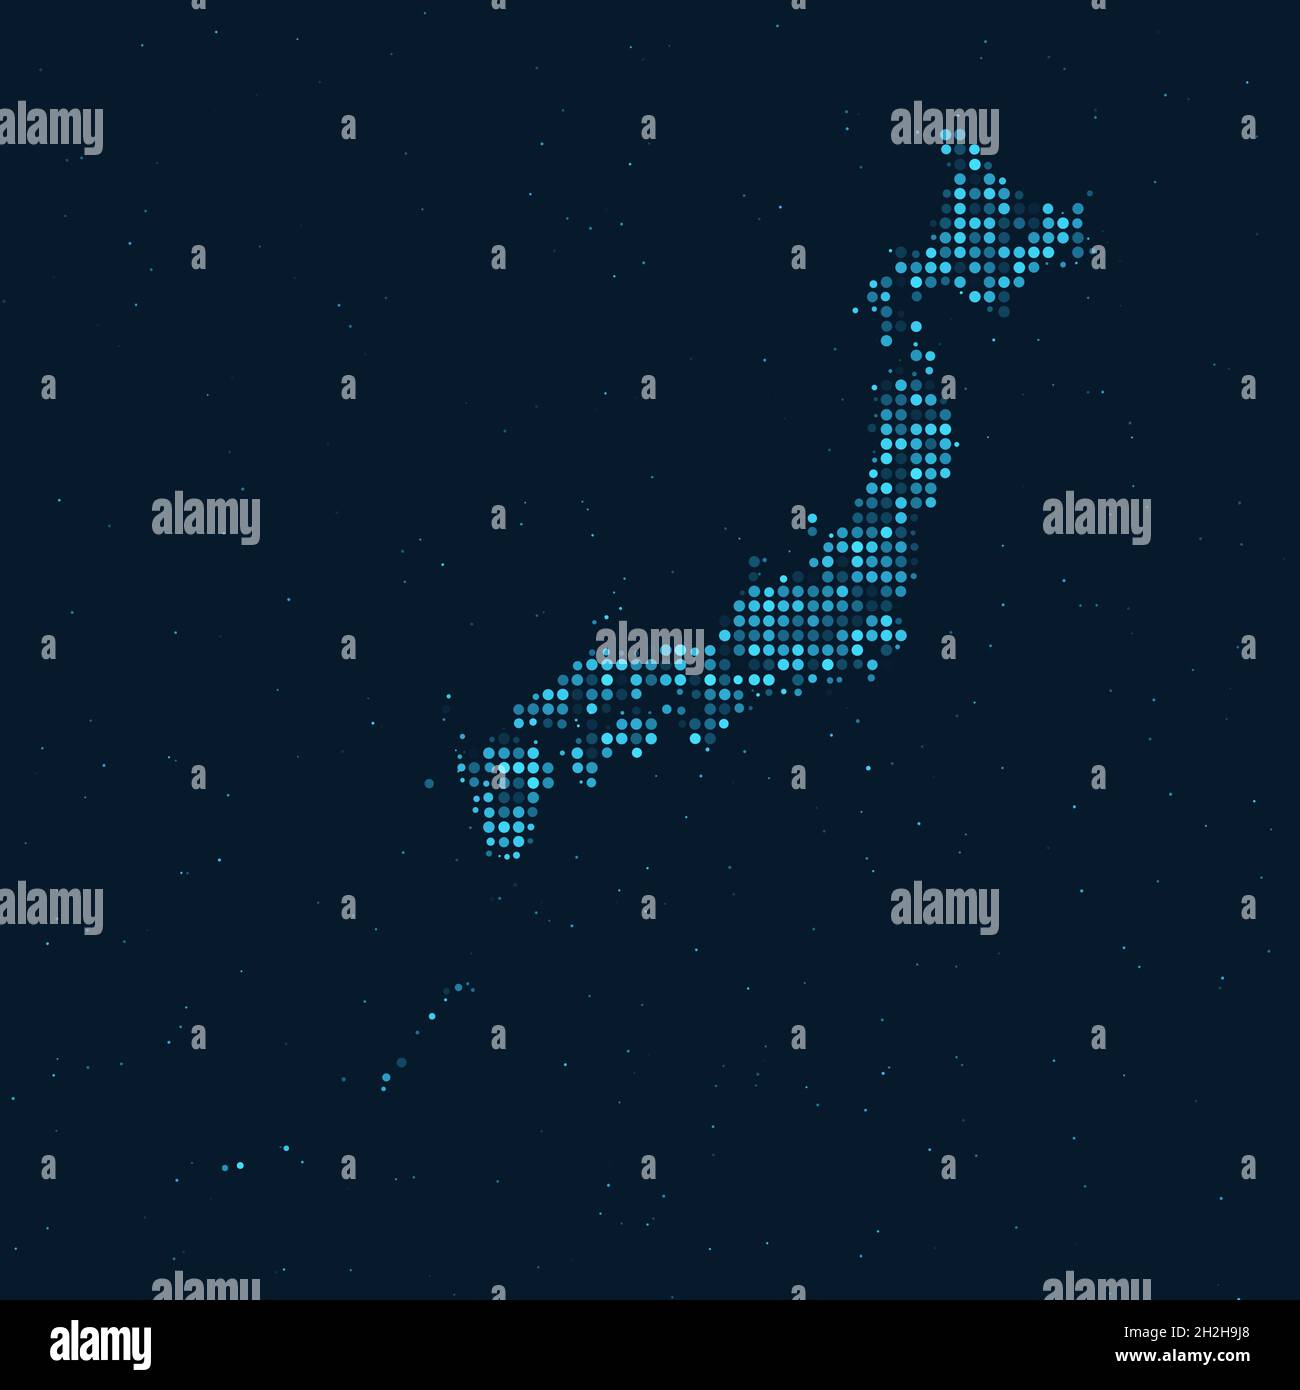 Abstrait pointillé demi-ton avec effet étoilé sur fond bleu foncé avec carte du Japon.Sphère et structure de la technologie numérique en pointillés. Vecteur i Illustration de Vecteur